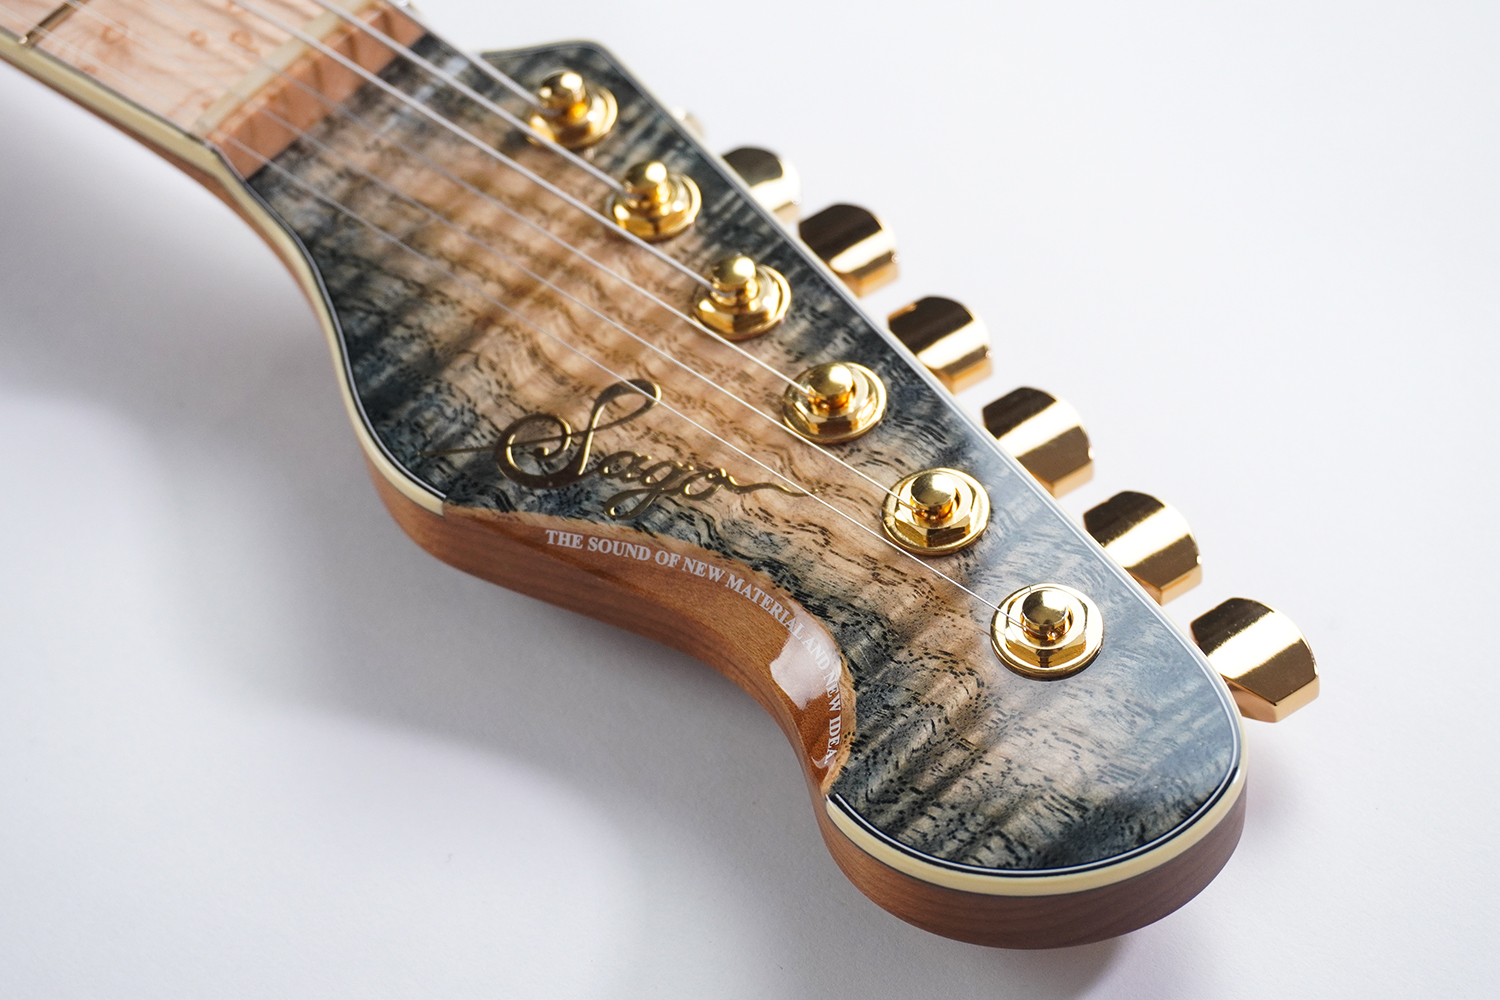 ギターの木材に国産木材は使えるの?!【和材】 | Sago New Material Guitars